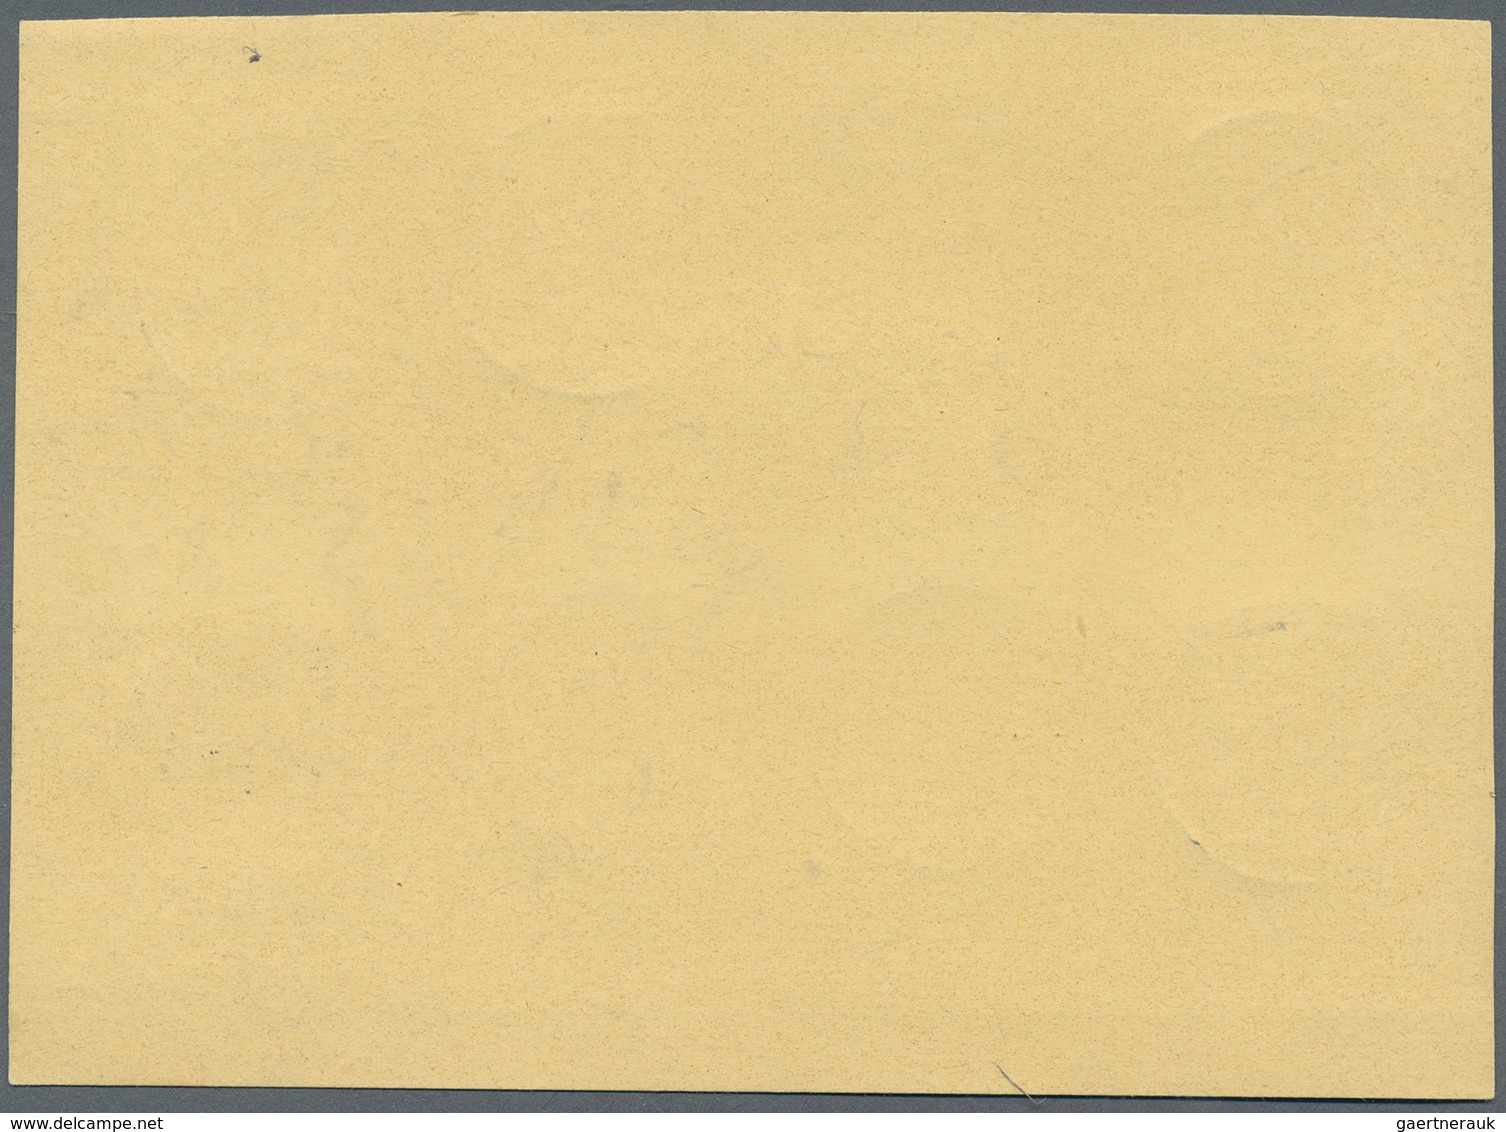 Bundesrepublik Deutschland: 1960, Heuss Lumogen, Kompletter Satz Auf Blanko-Karte, Jeder Wert Einzel - Lettres & Documents